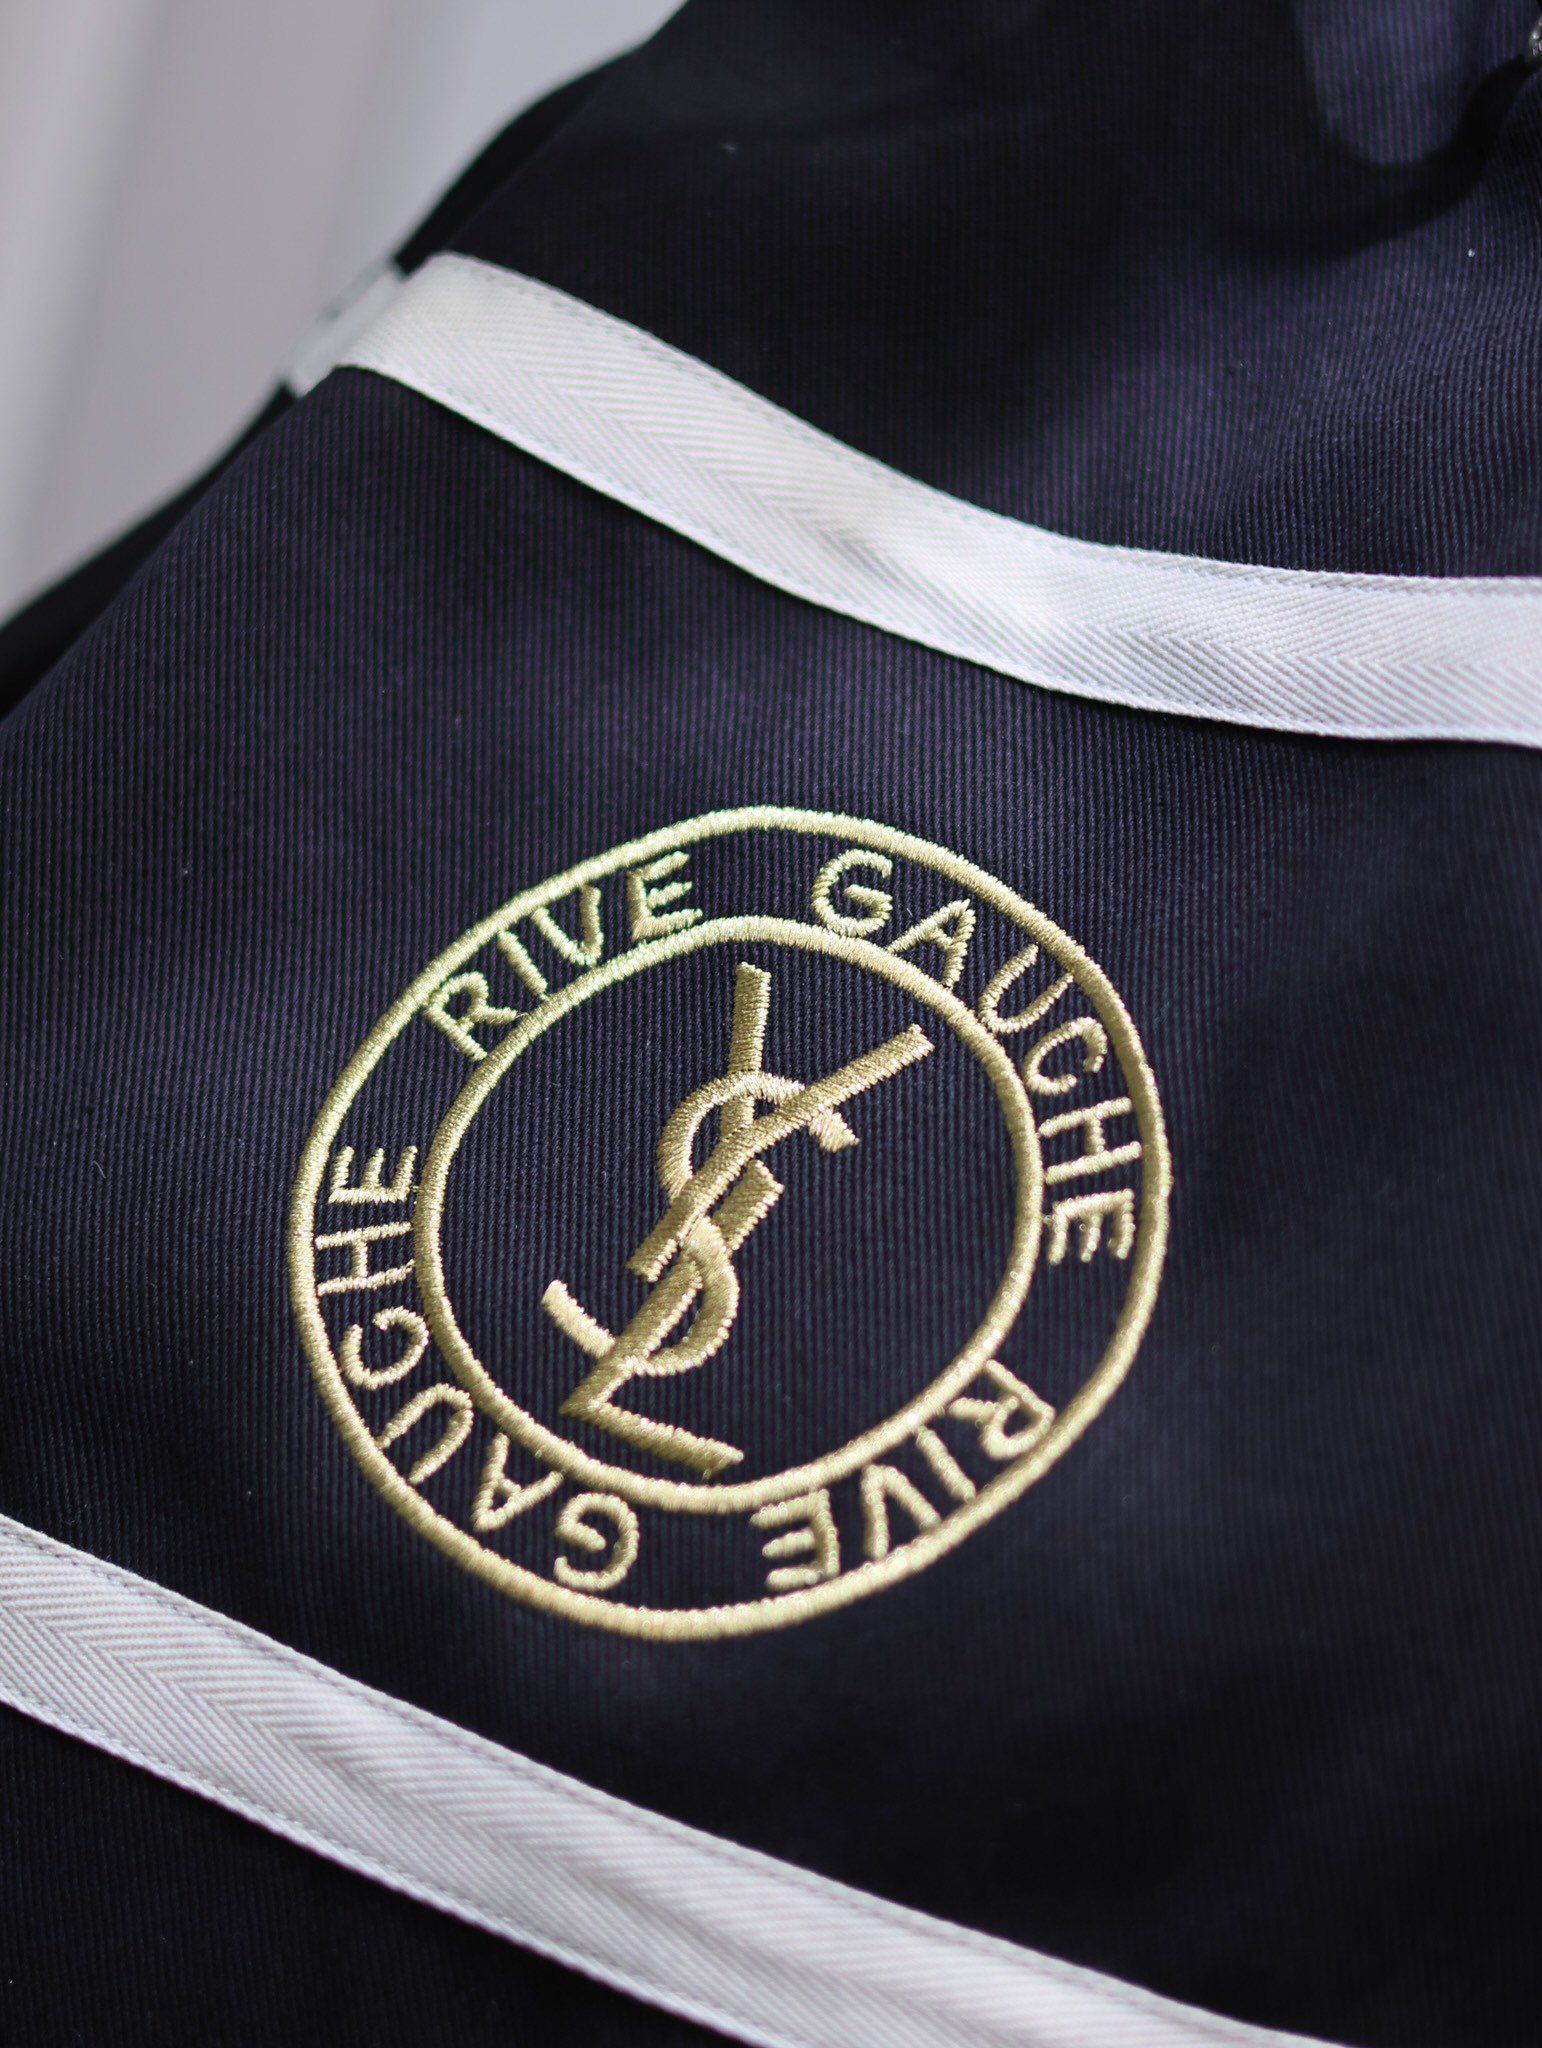 RIVEGAUCHE王炸单肩包来袭不得不说背包始终是包包世界不可或缺的一员厚制帆布徽章款设计搭配logo